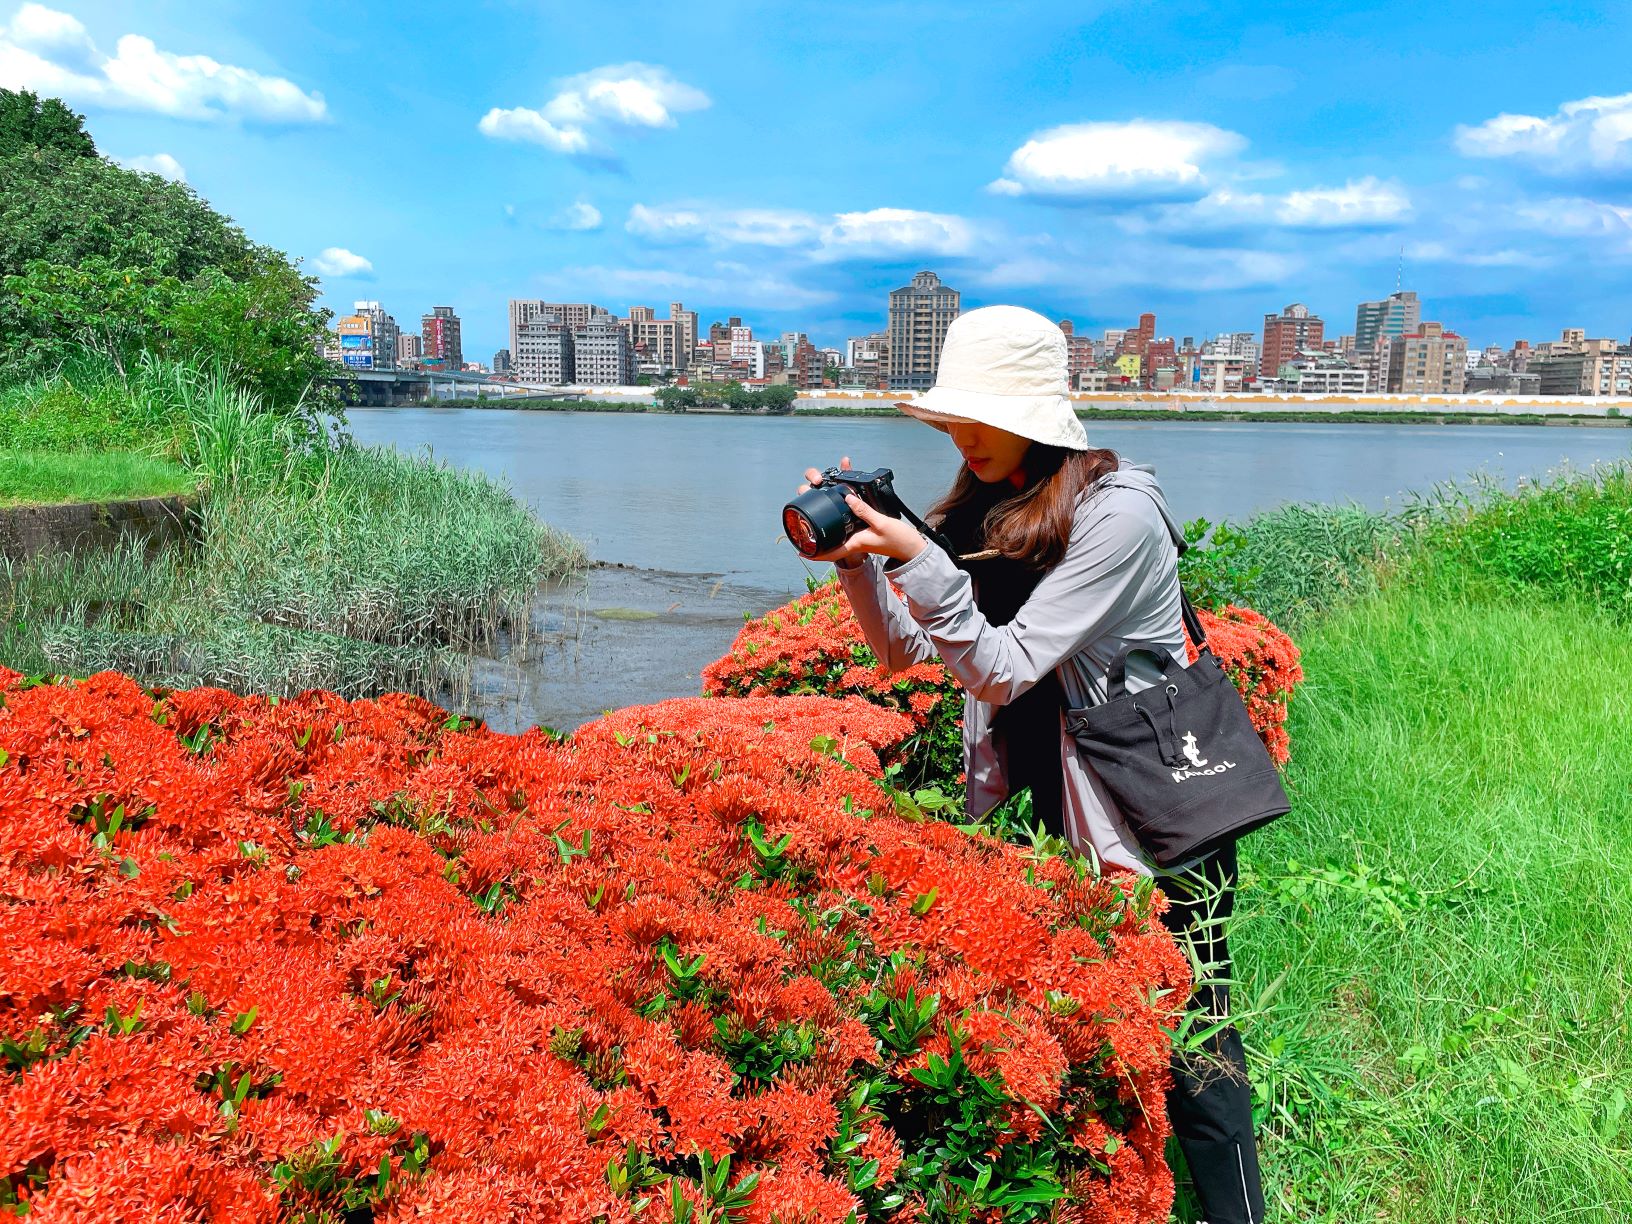 仙丹花盛開時呈現花團錦簇的景象吸引許多喜愛花草的民眾拍攝